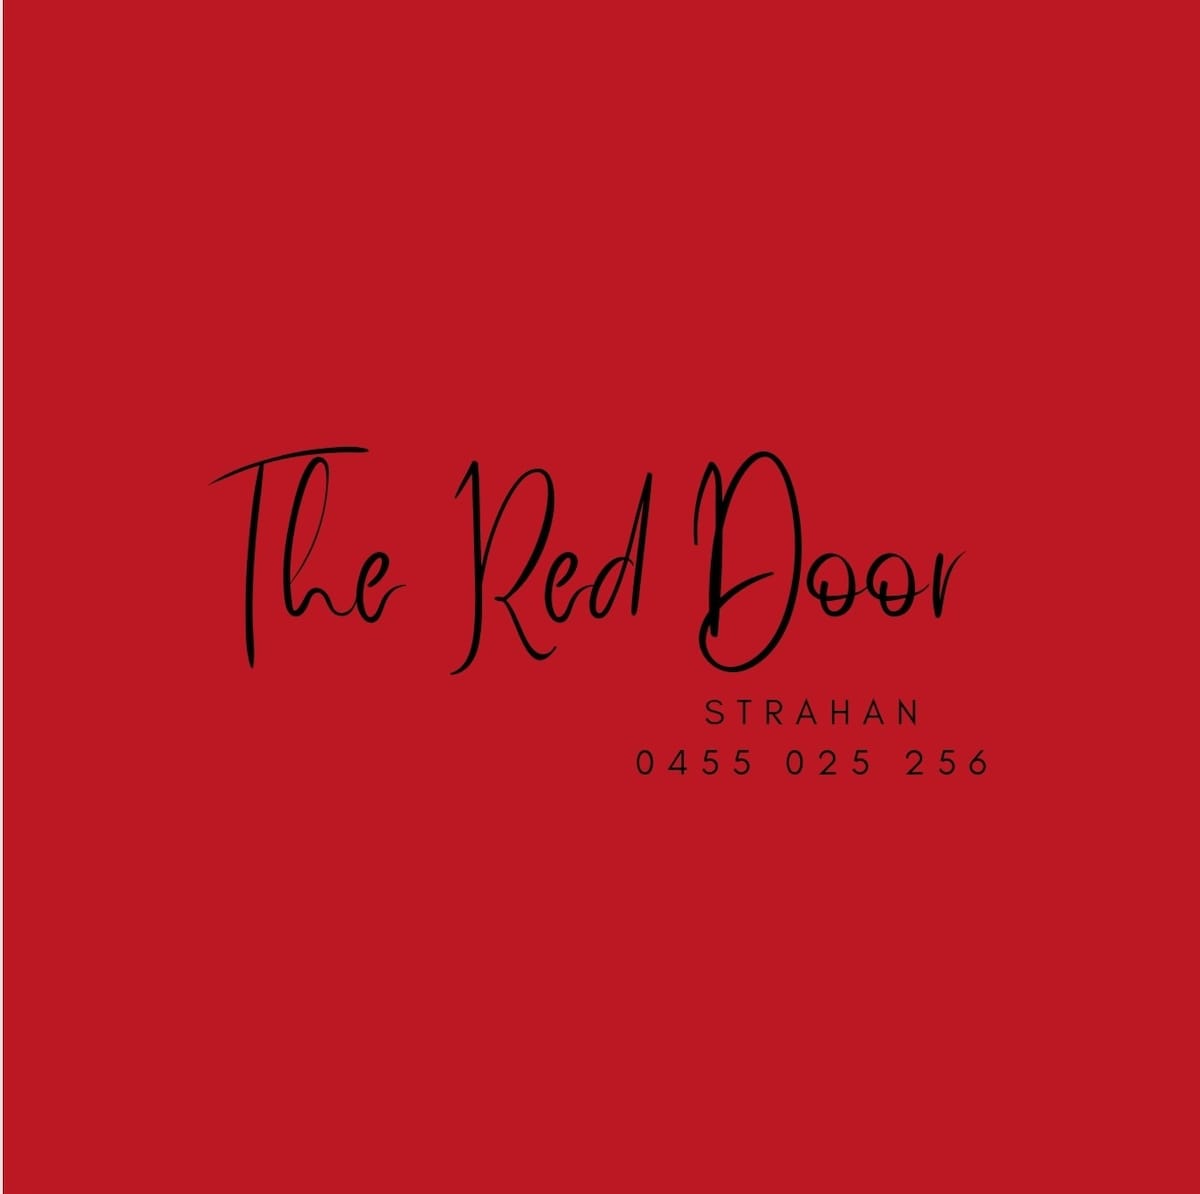 The Red Door Strahan